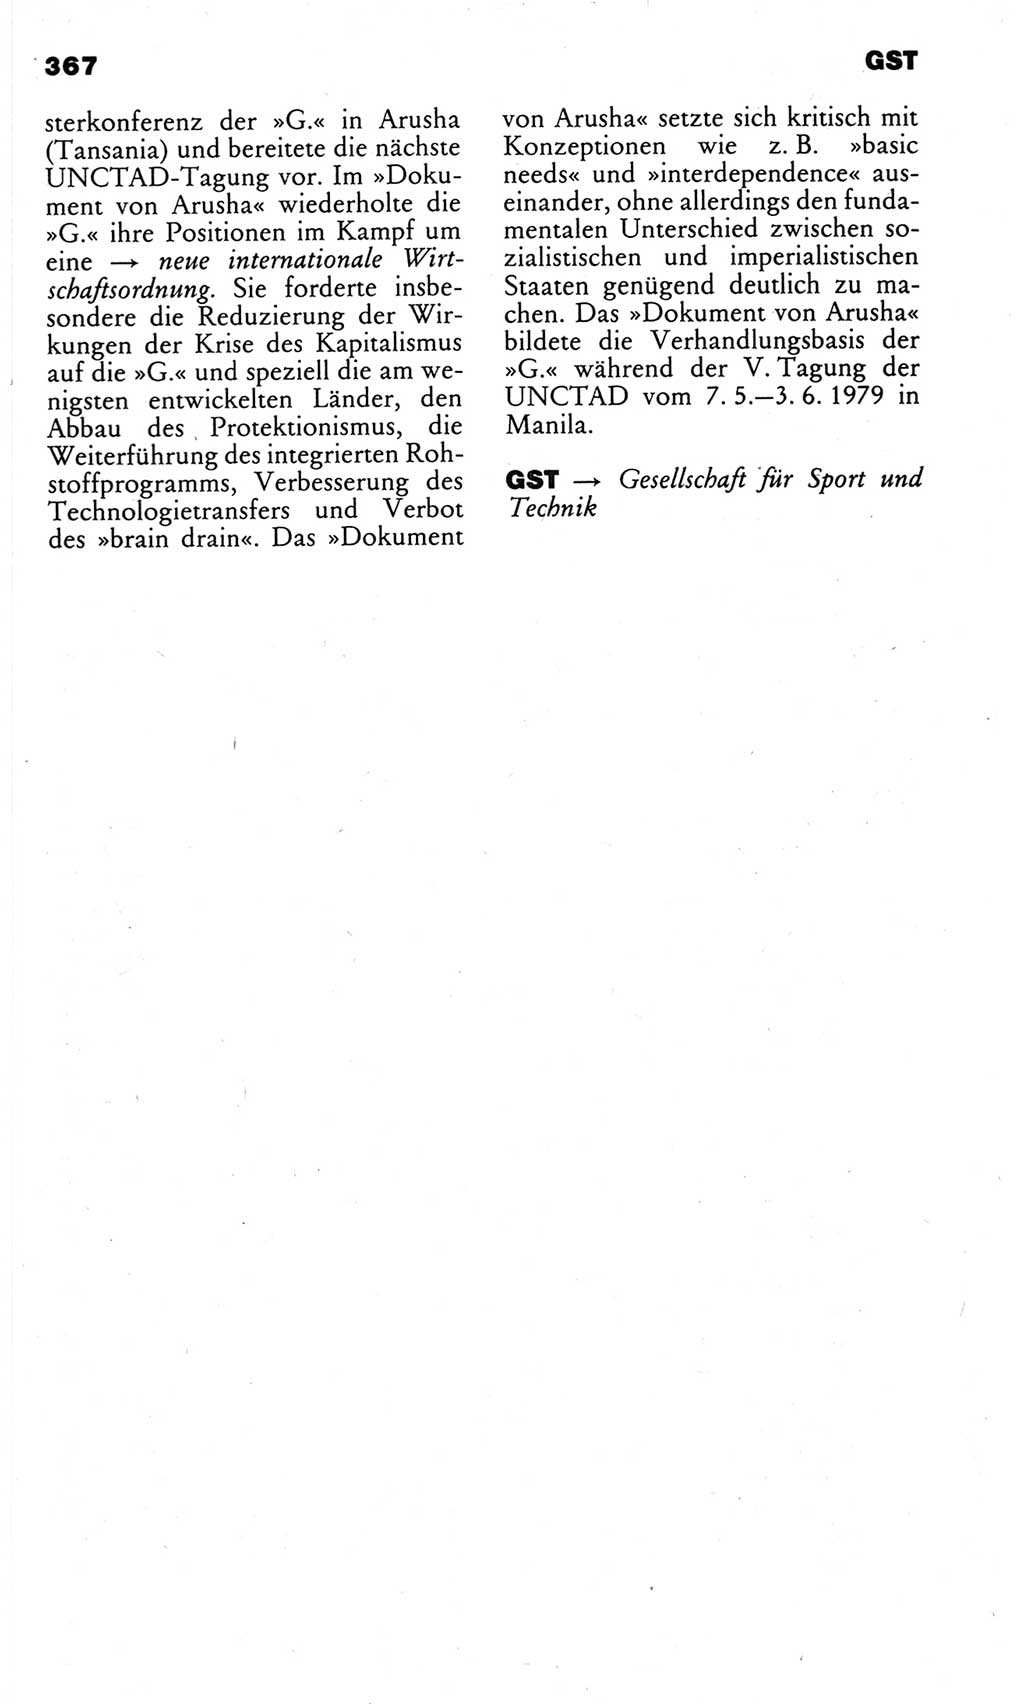 Kleines politisches Wörterbuch [Deutsche Demokratische Republik (DDR)] 1983, Seite 367 (Kl. pol. Wb. DDR 1983, S. 367)